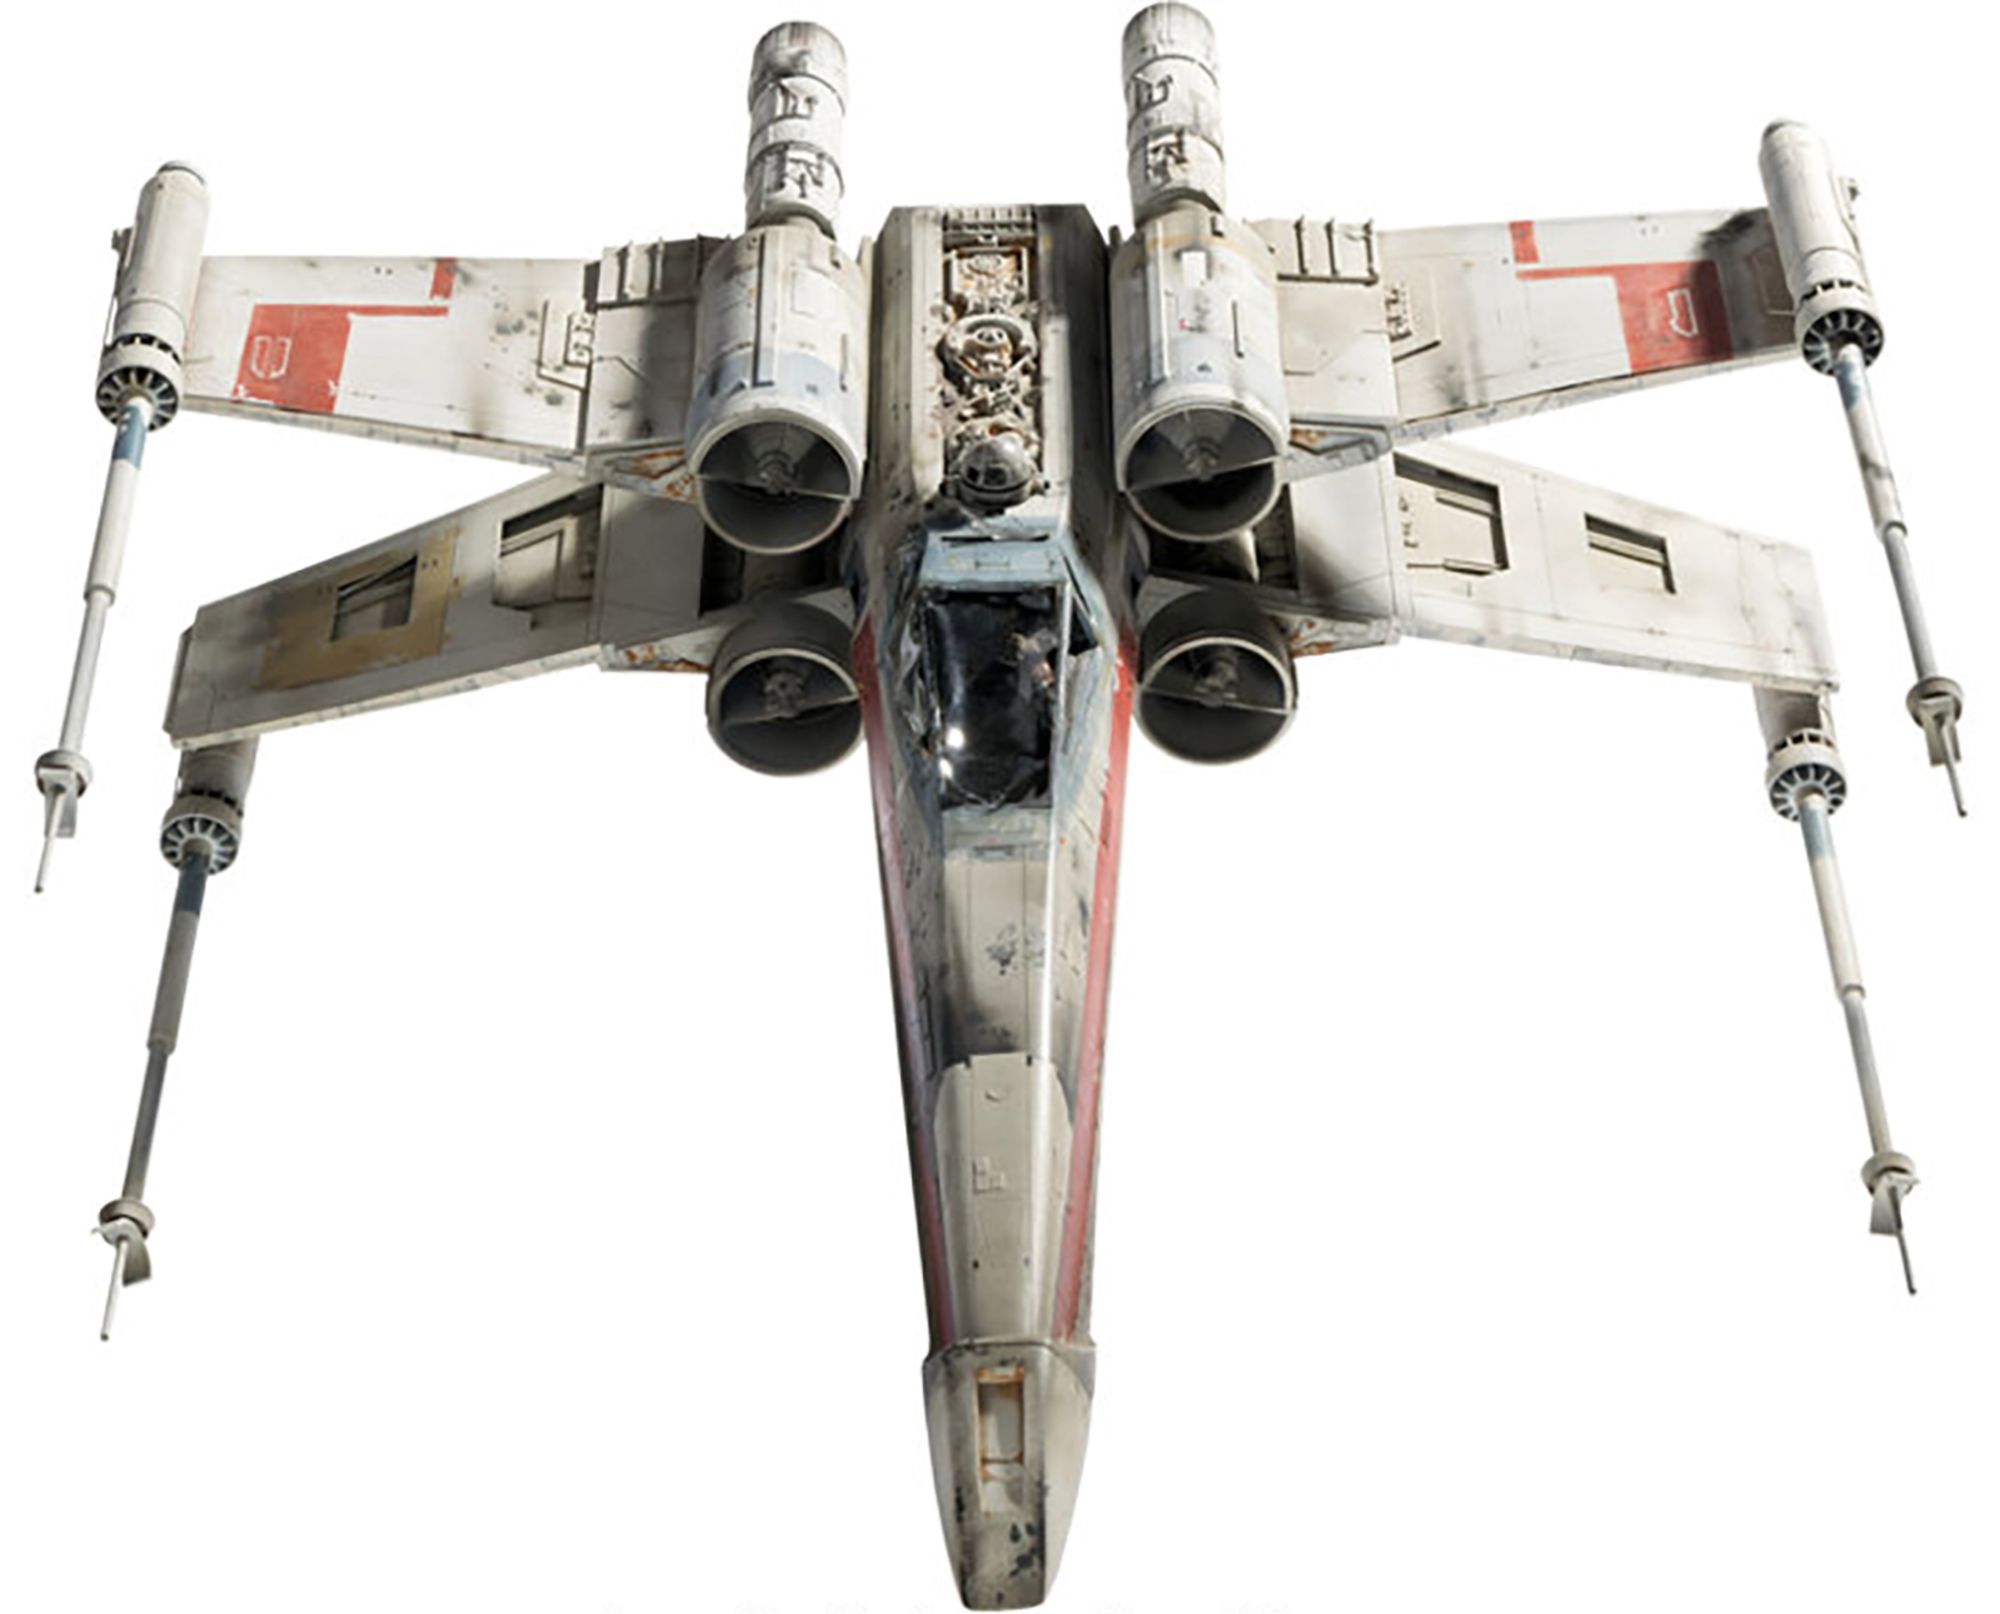 02 Star Wars Starfighter model